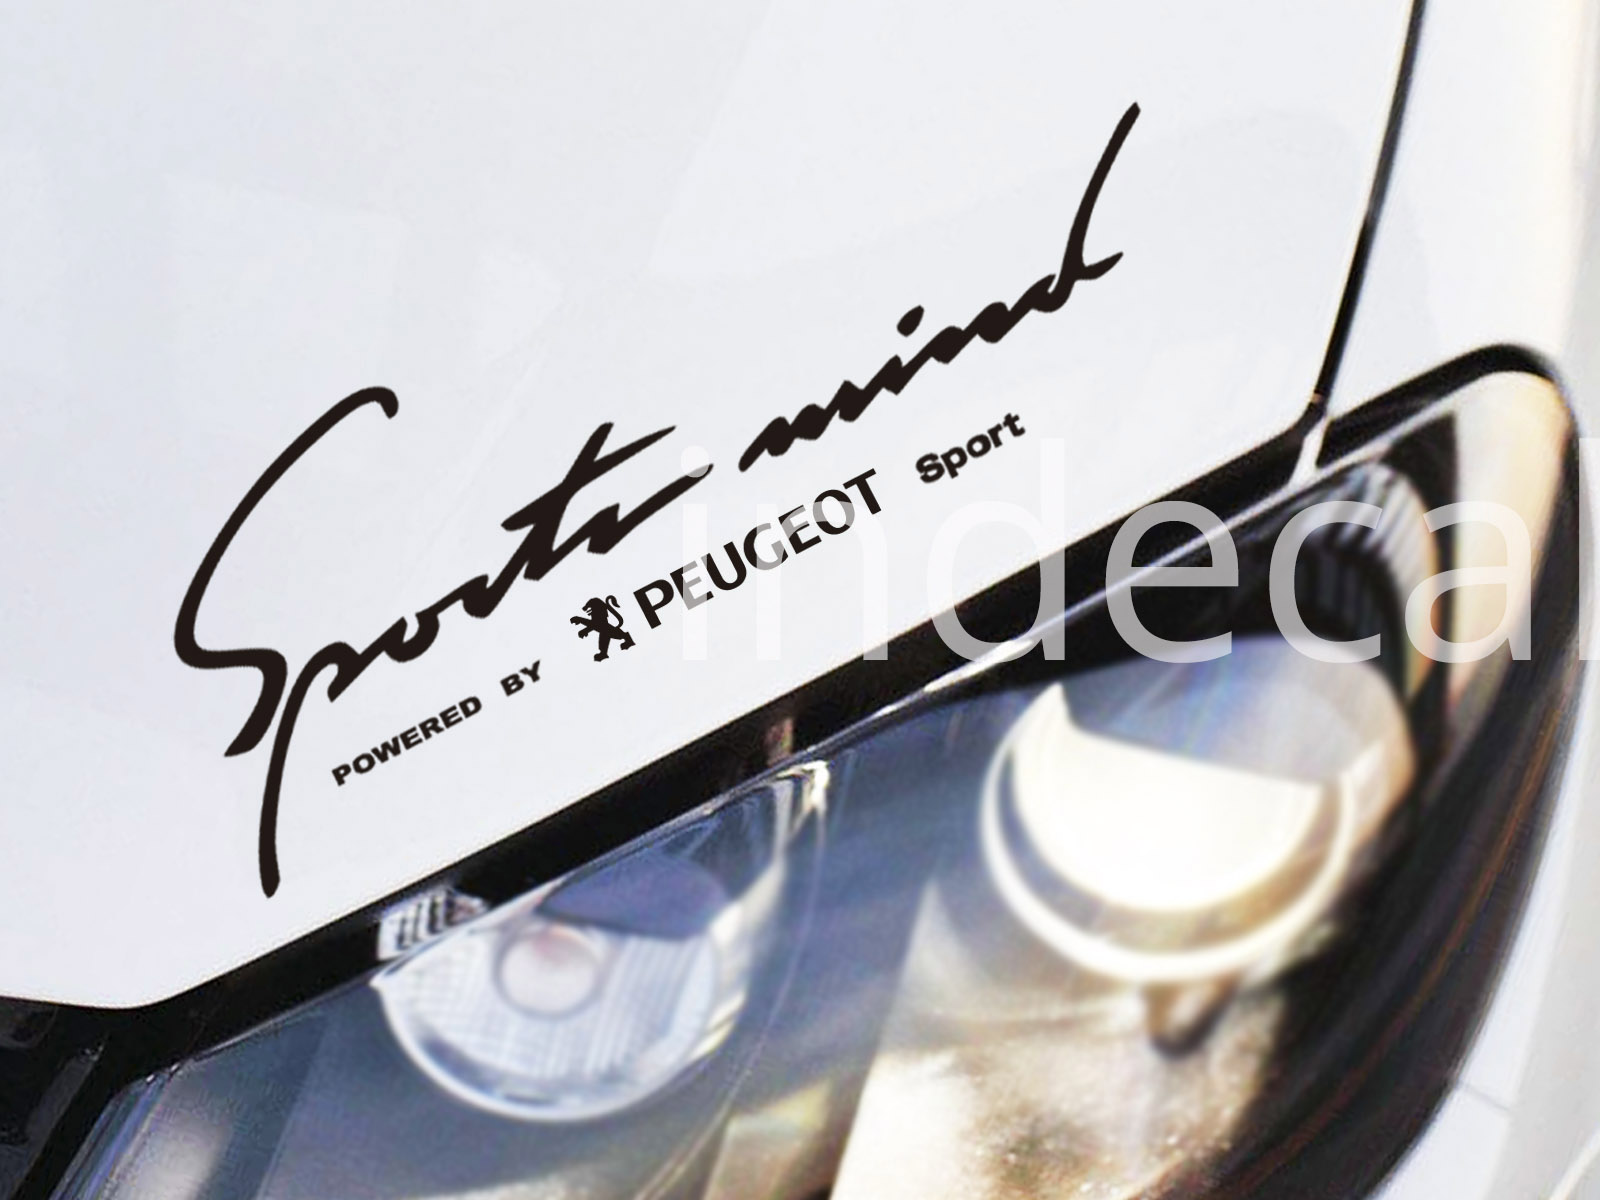 1 x Peugeot Sports Mind Sticker - Black